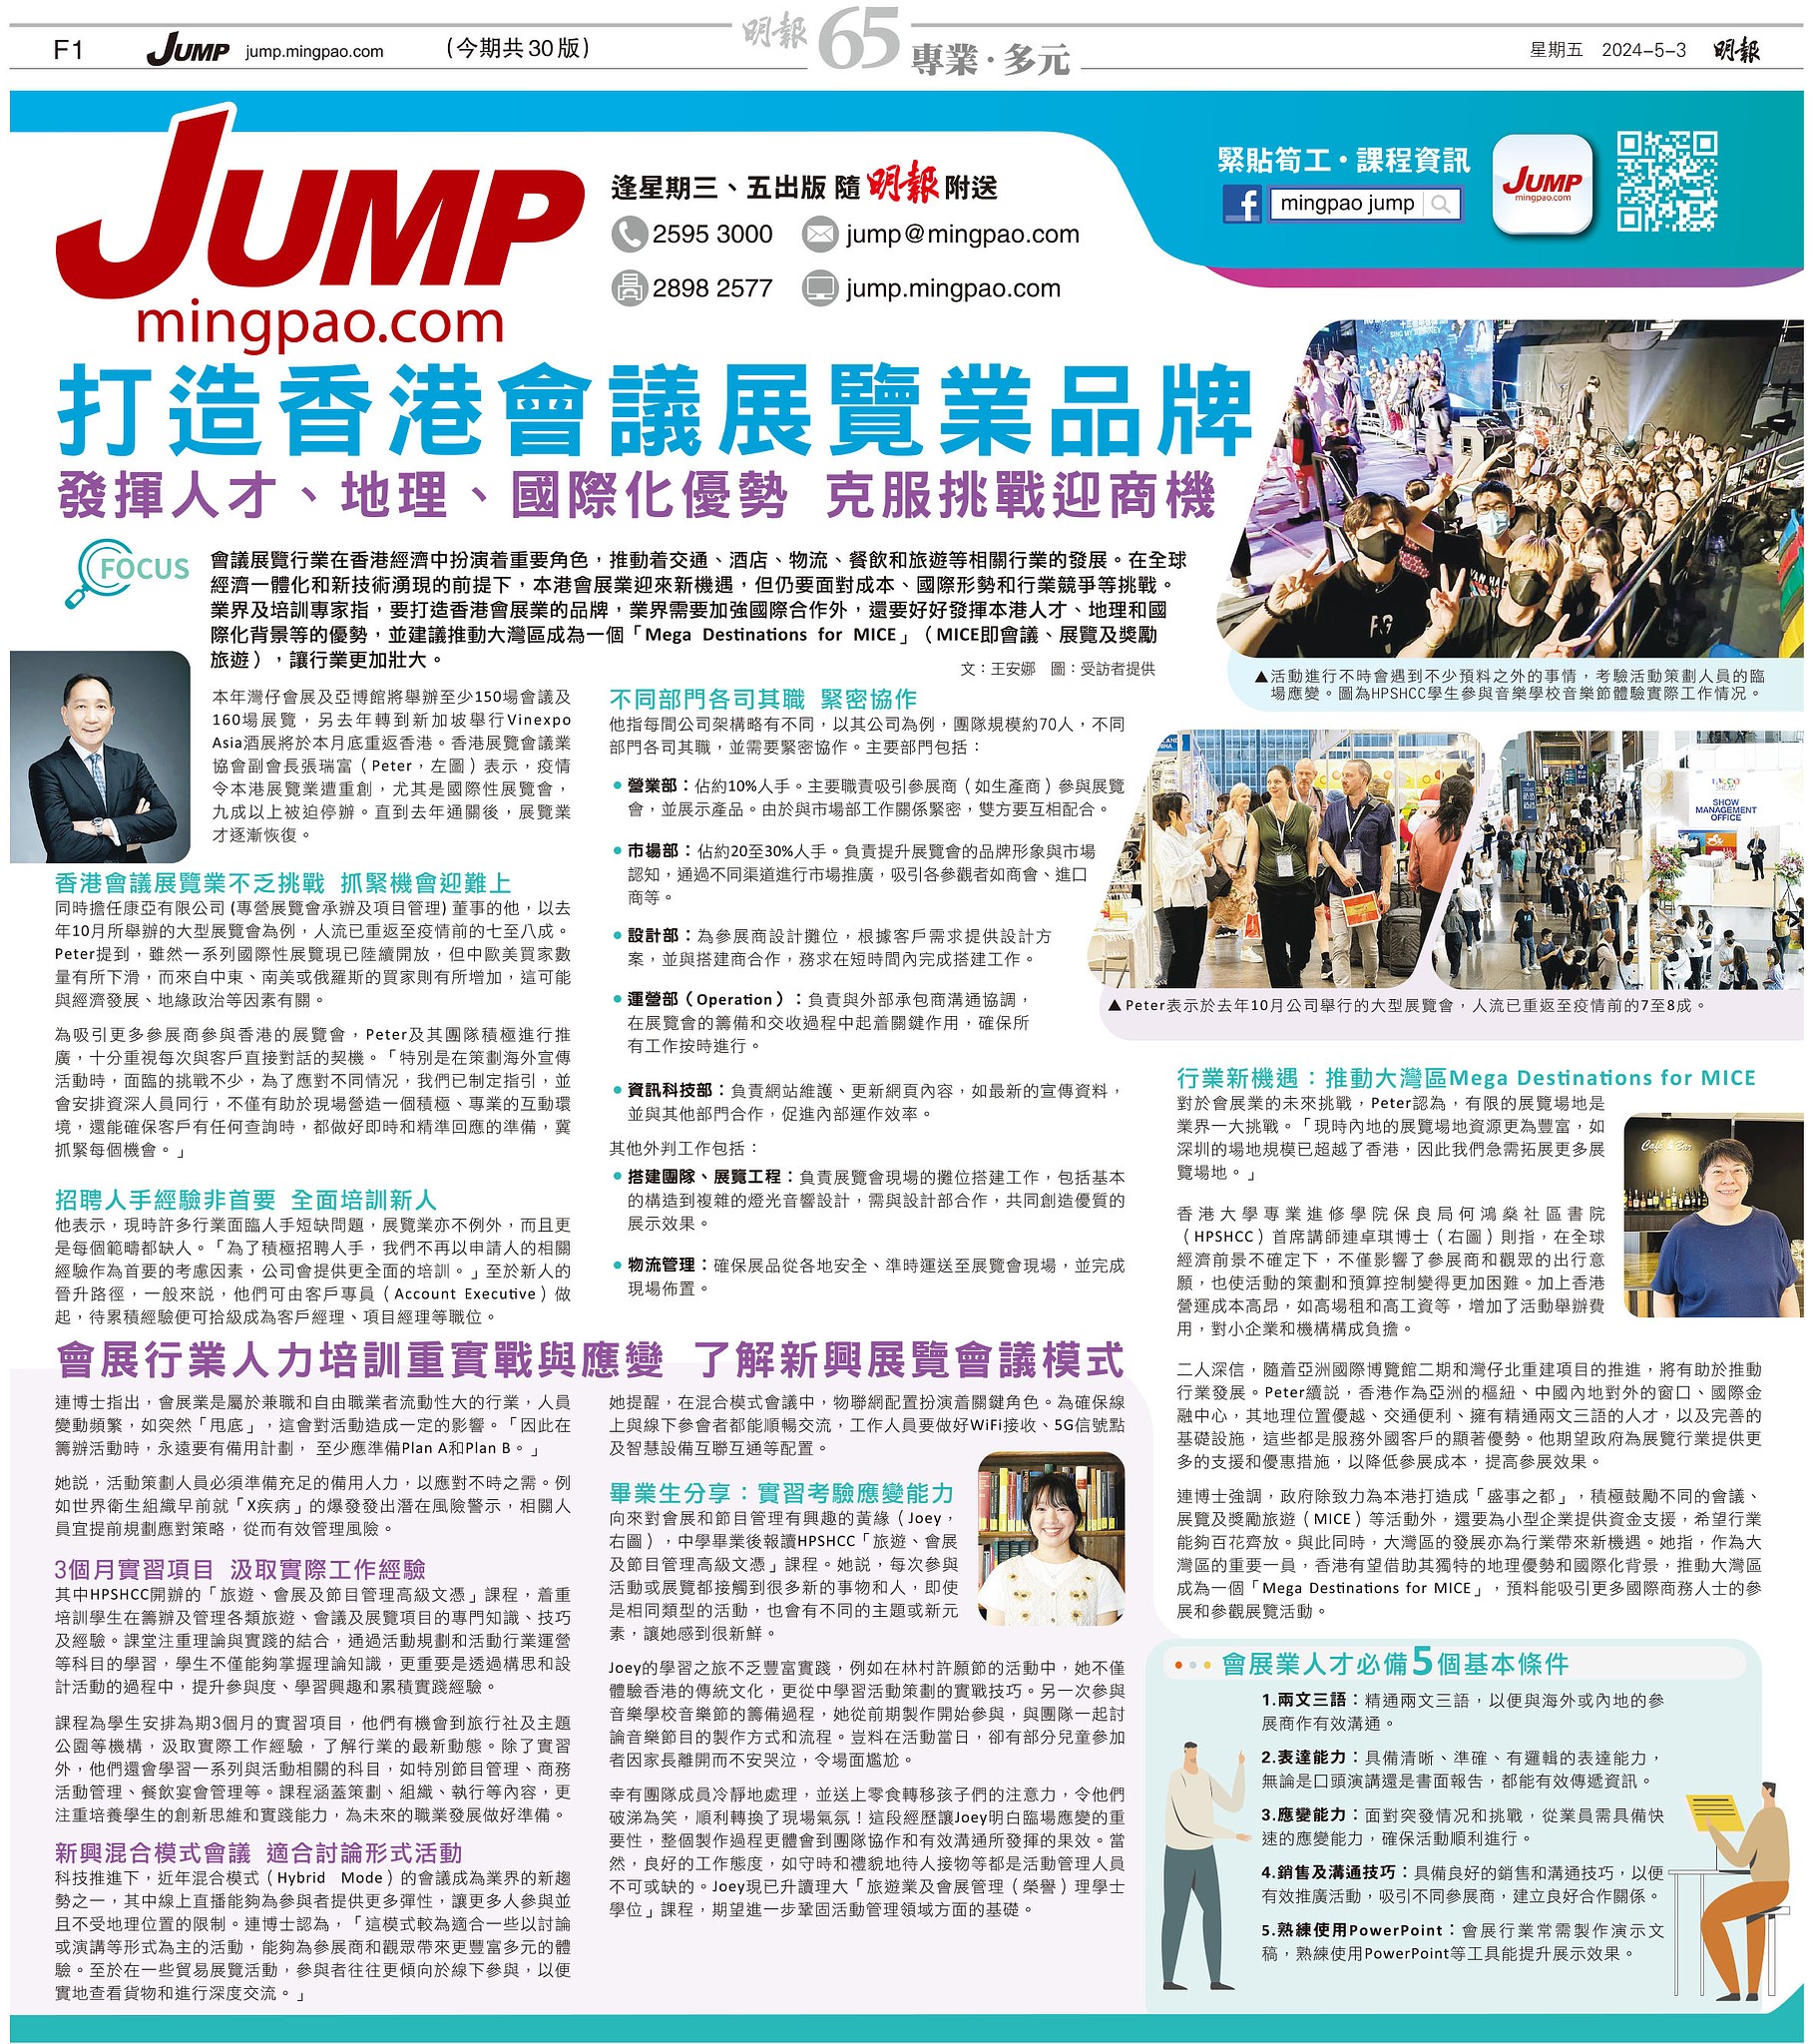 Mingpao JUMP 3May24